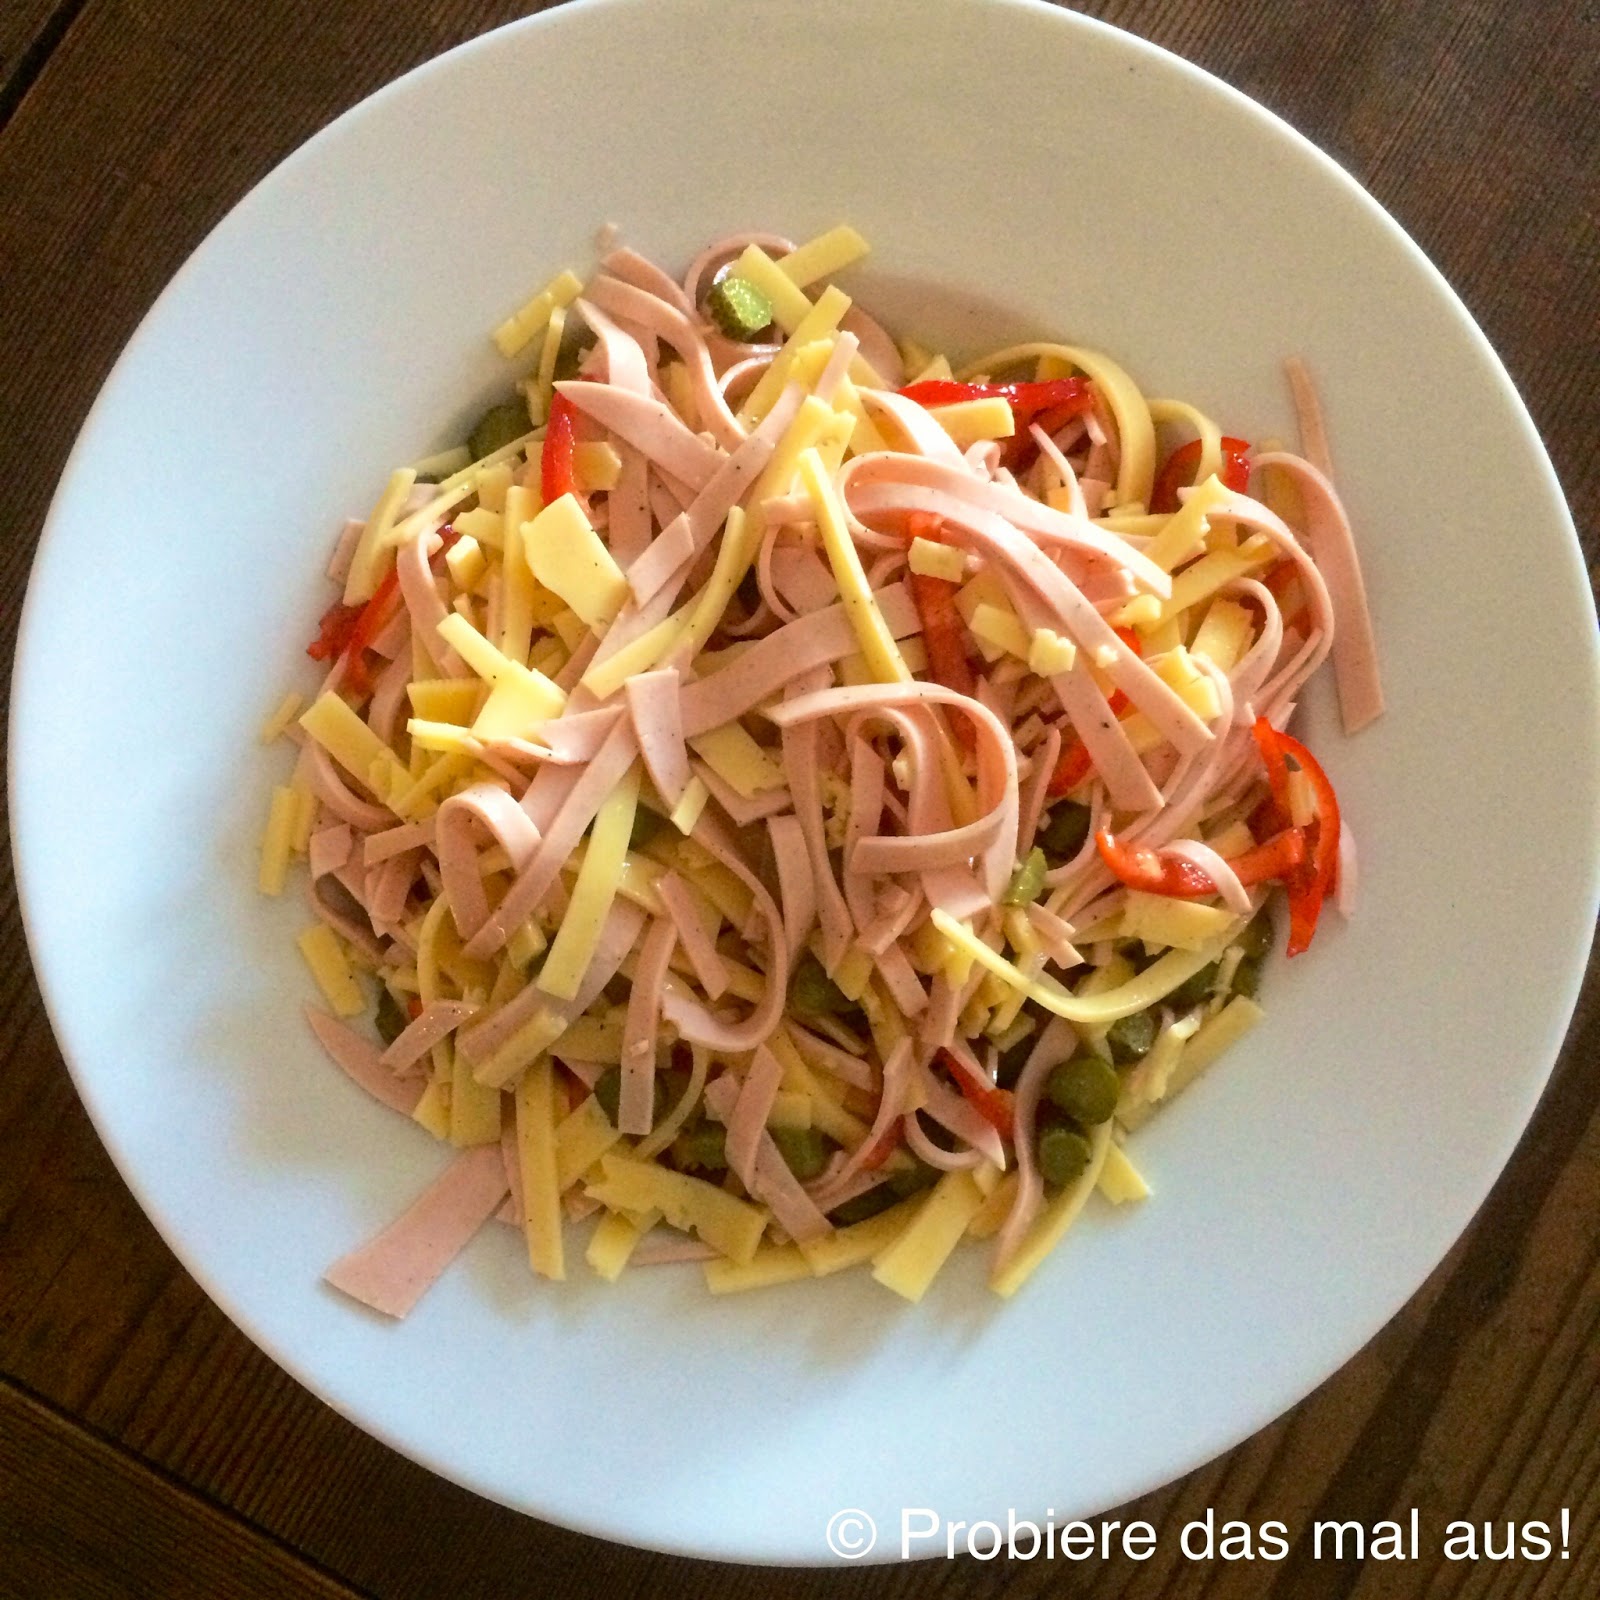 Probiere das mal aus!: Käse-Wurst-Salat